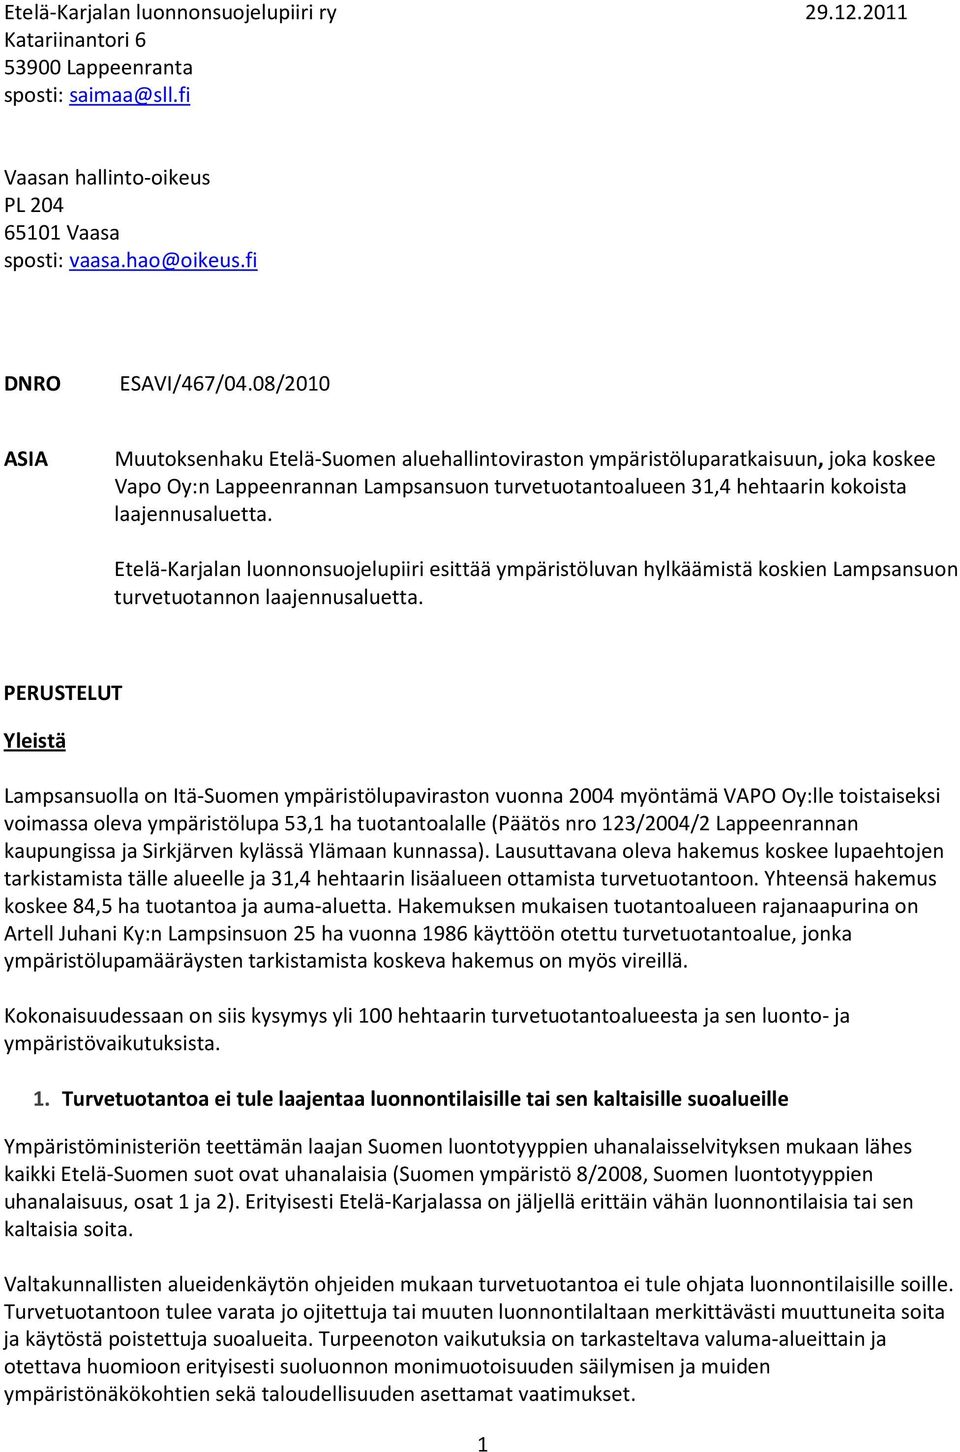 Etelä-Karjalan luonnonsuojelupiiri esittää ympäristöluvan hylkäämistä koskien Lampsansuon turvetuotannon laajennusaluetta.